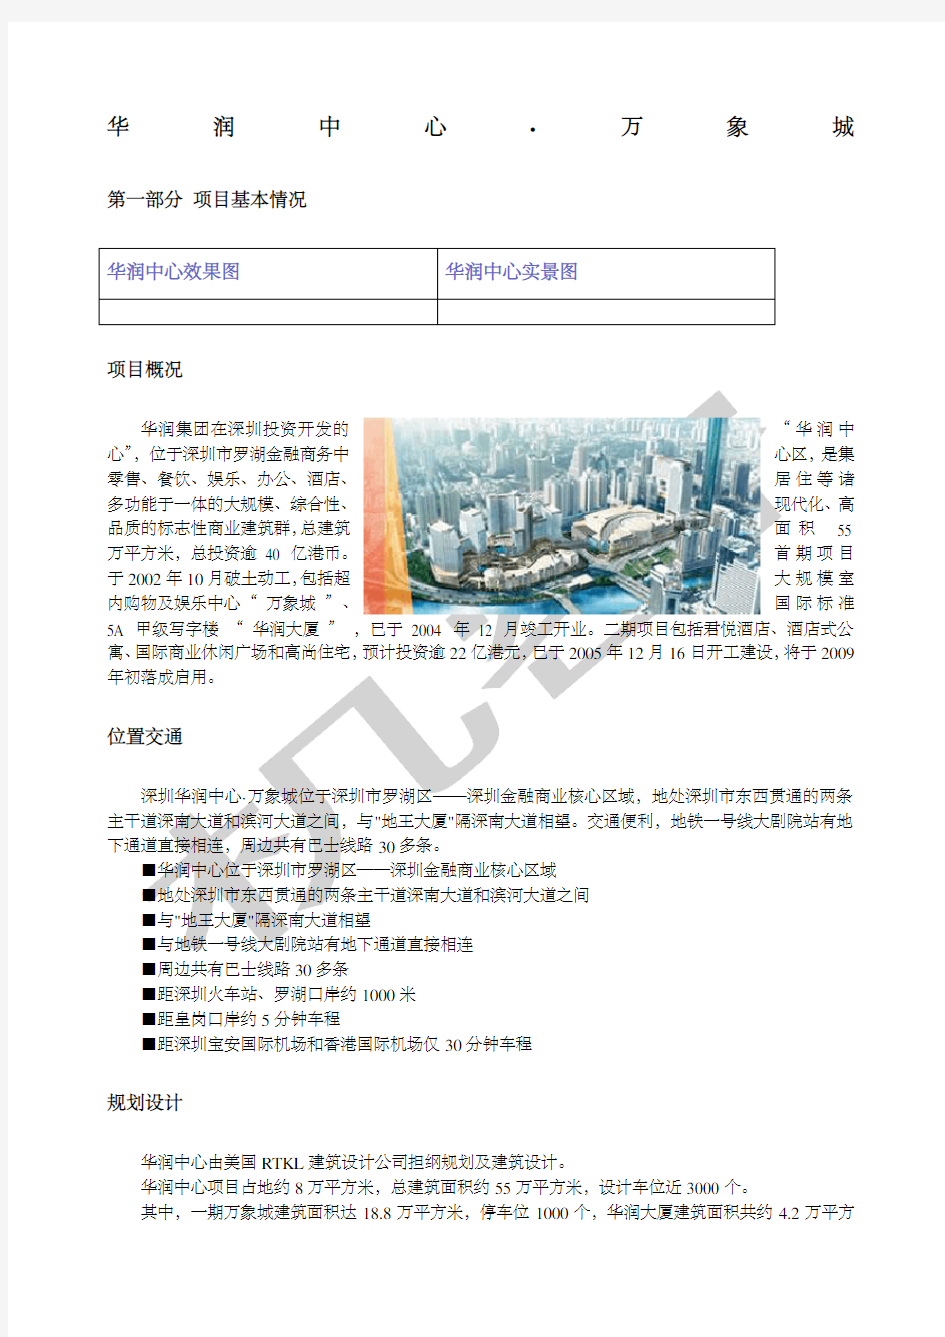 深圳万象城shoppingmall项目商业规划及业态组合方案